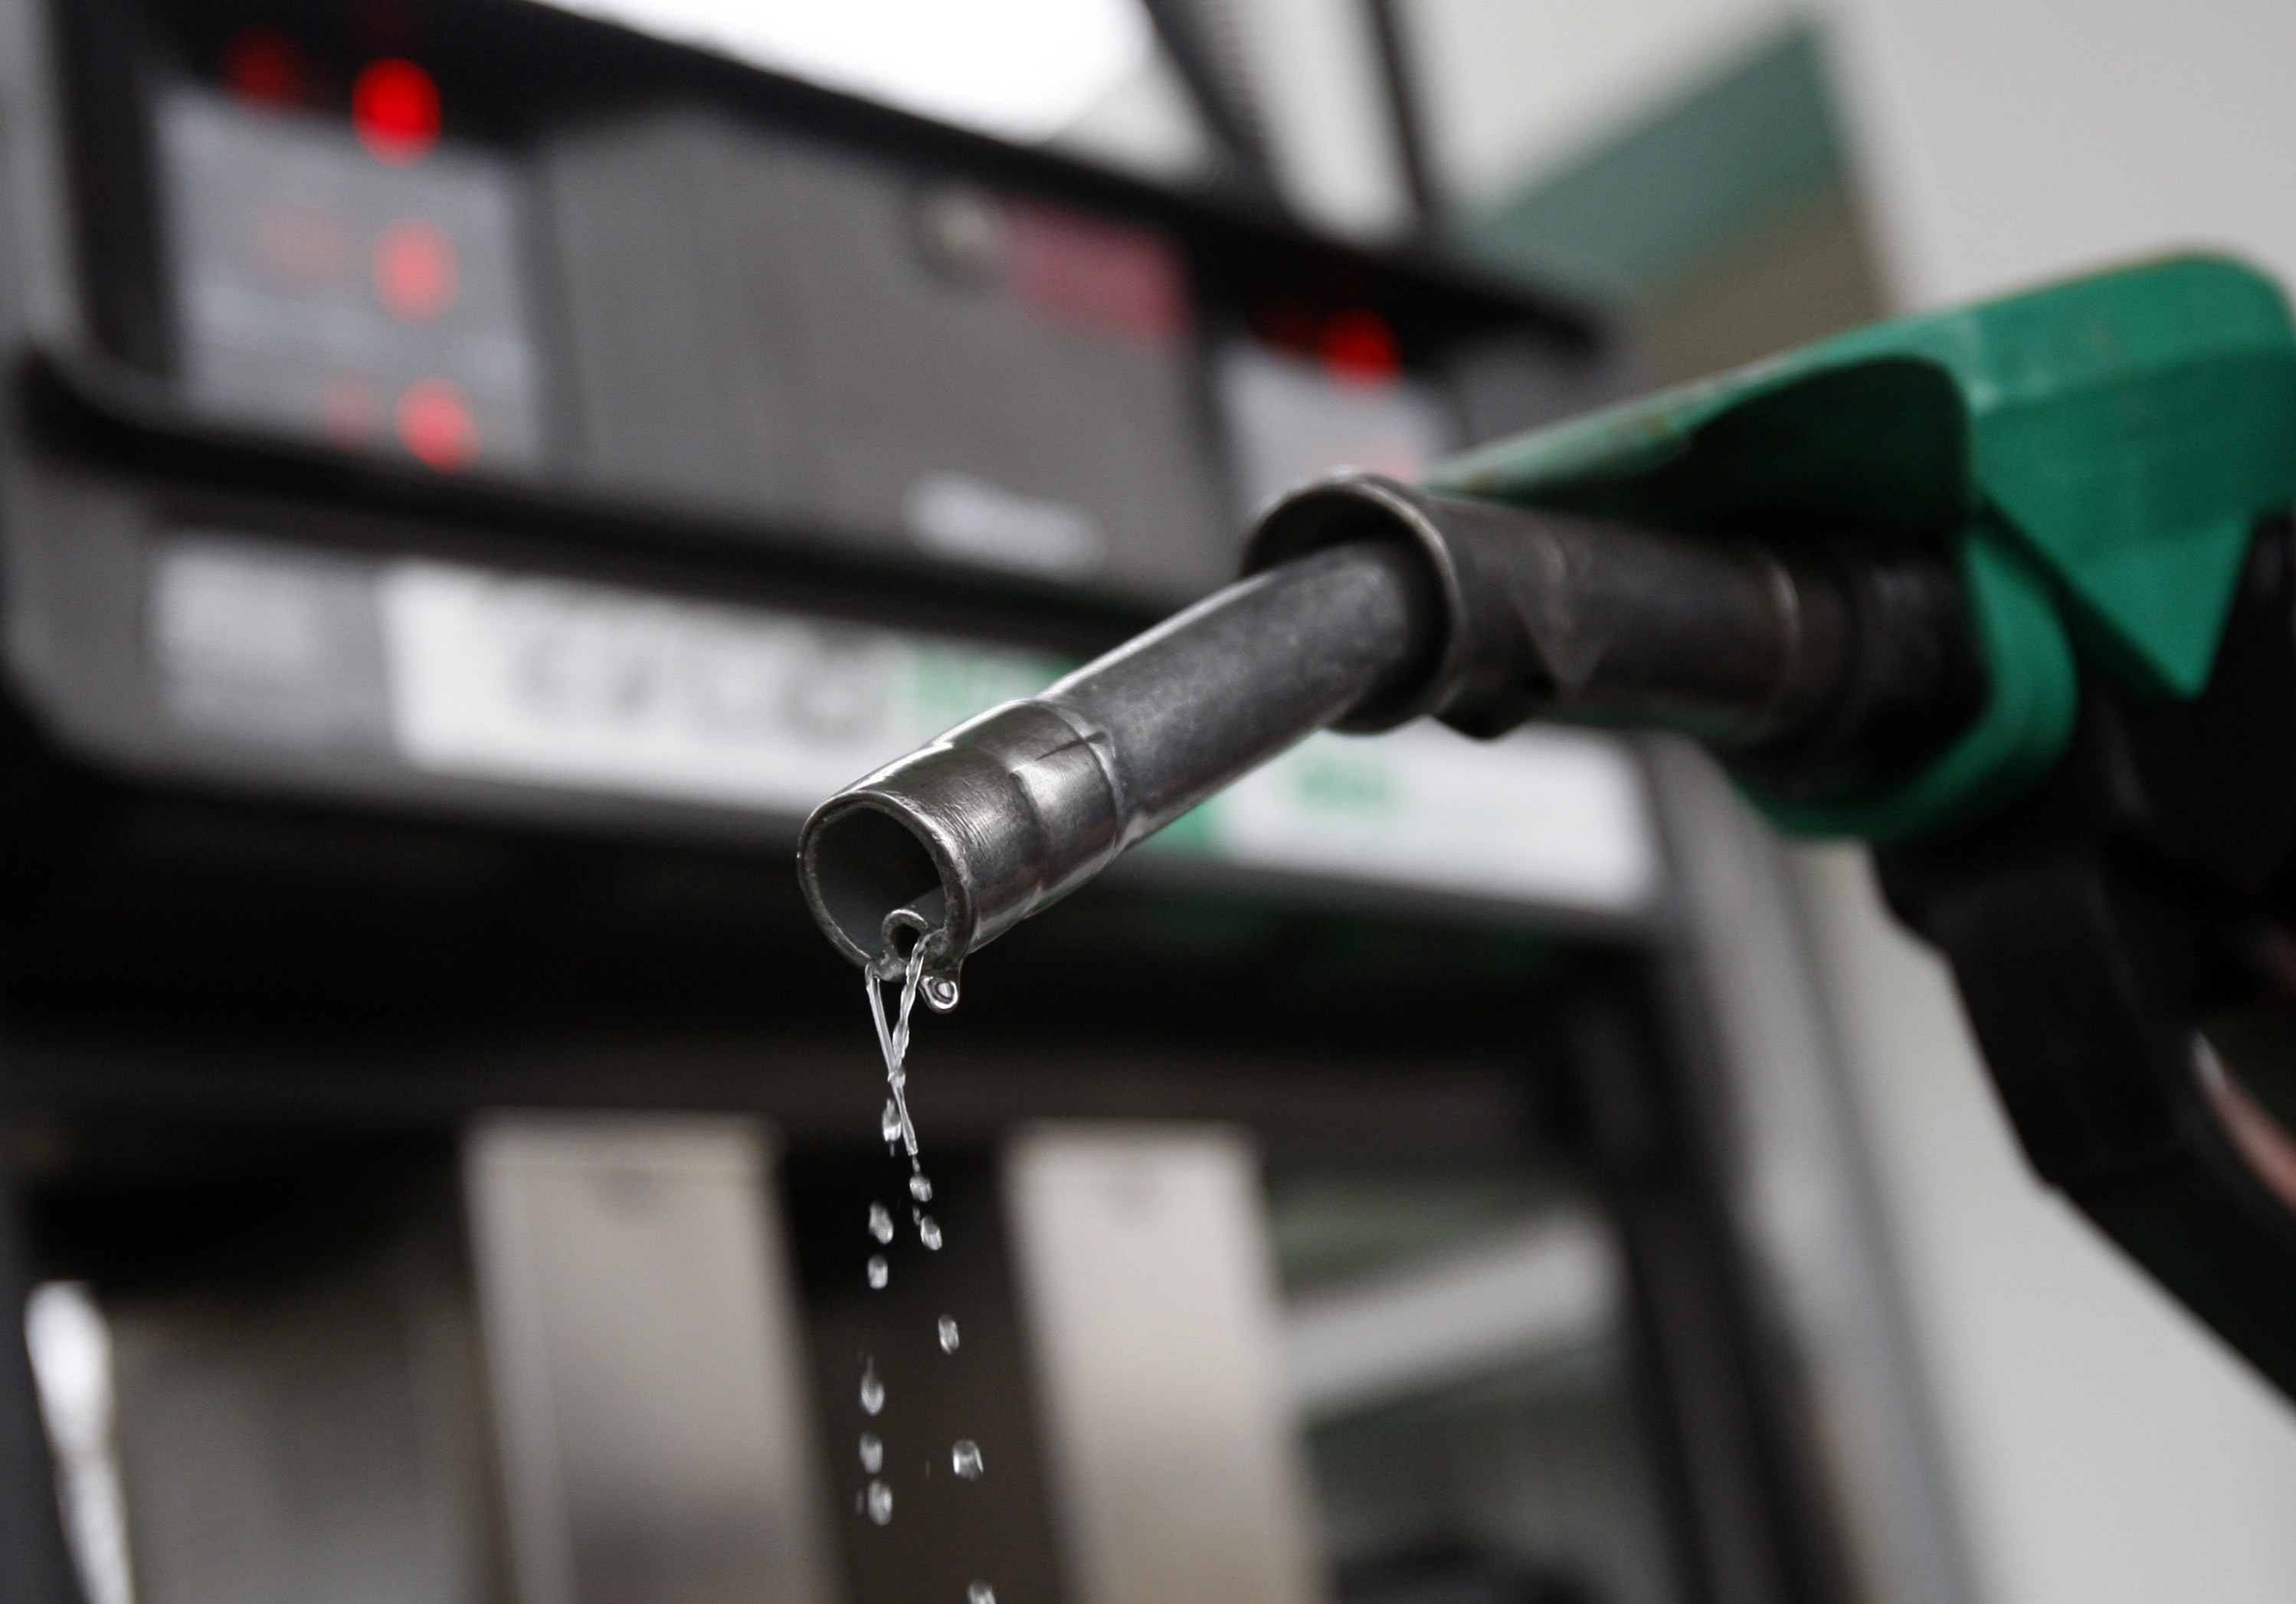 Injustificado aumentar precios de gasolinas.- Concanaco